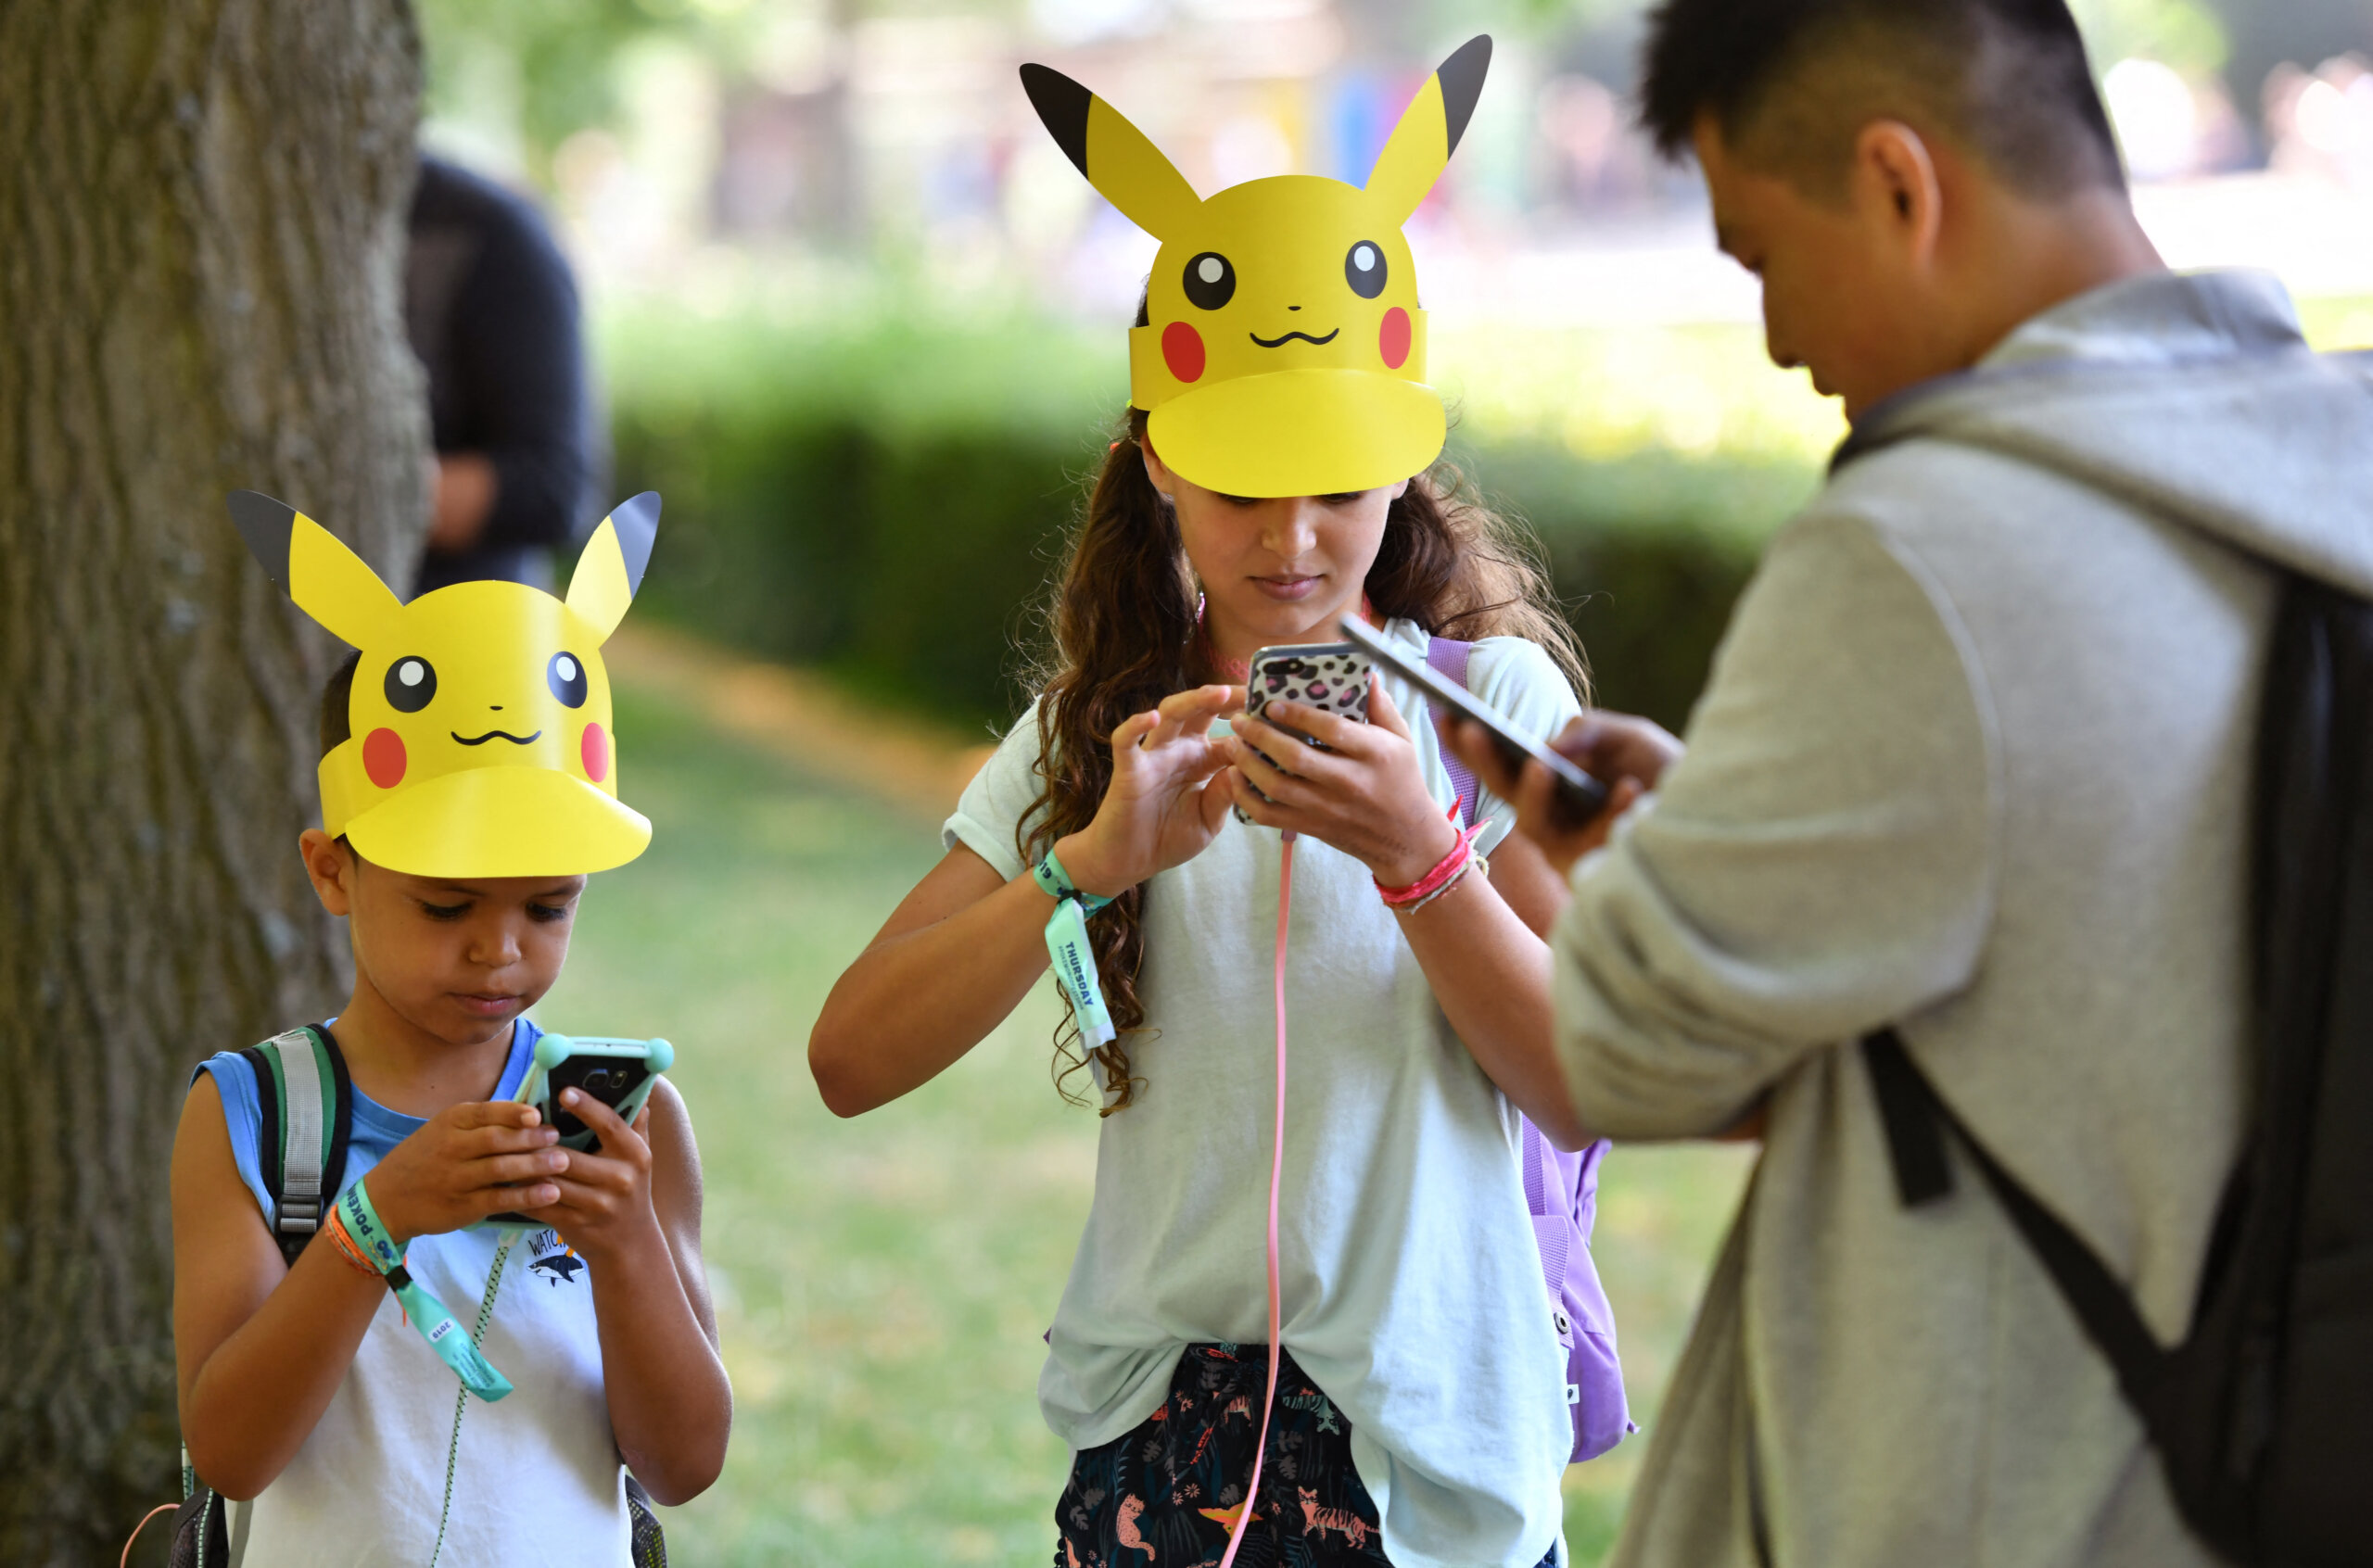 Niantic's Global Virtual Pokémon GO Fest in July